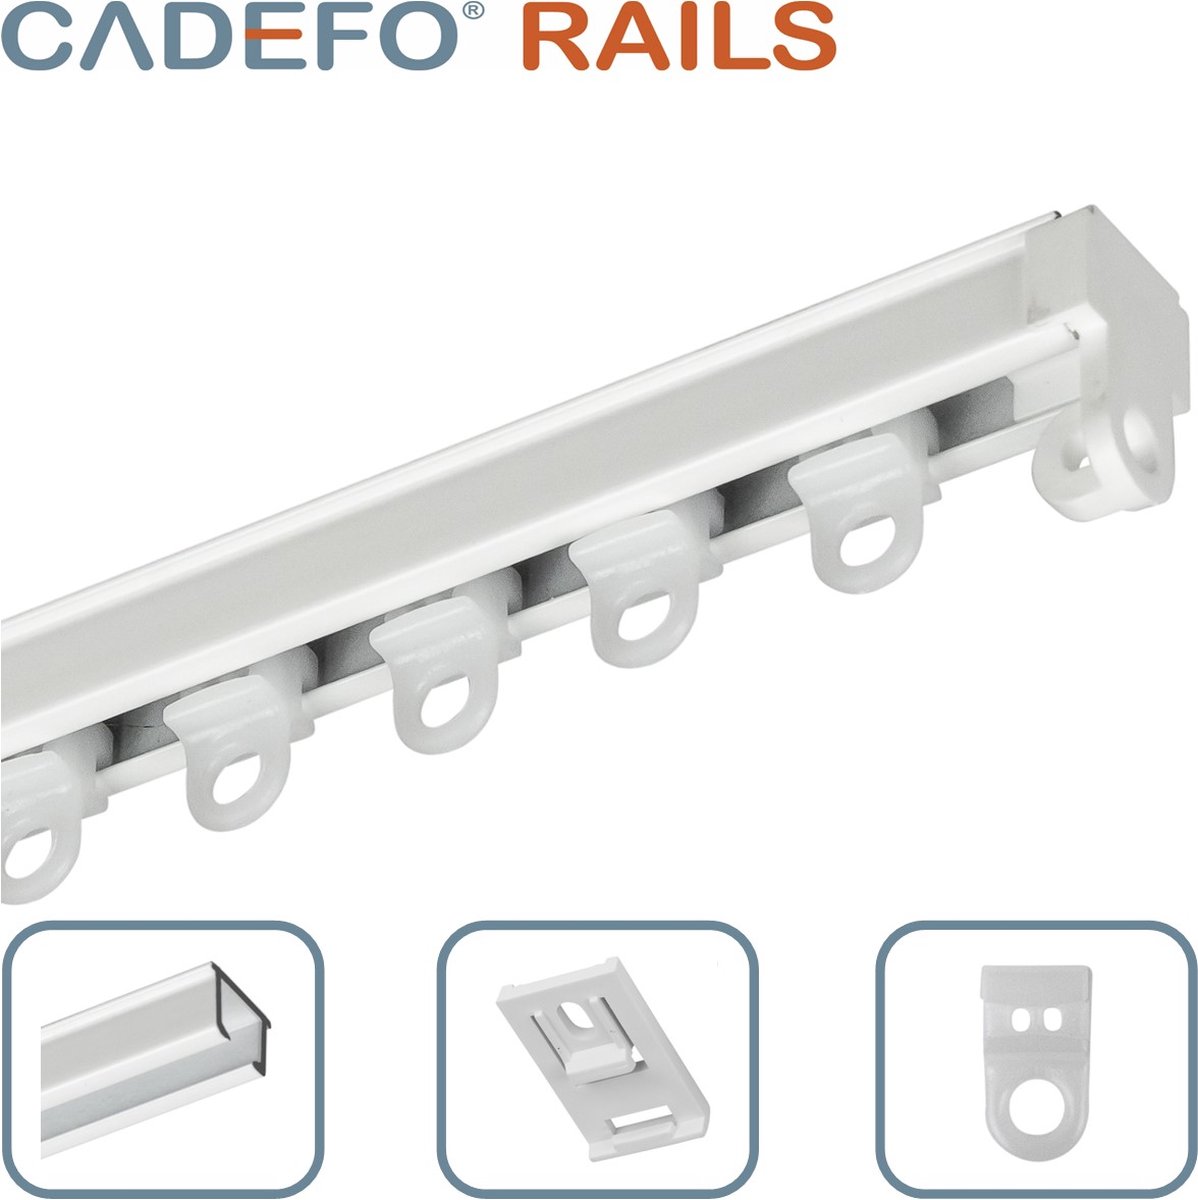 CADEFO RAILS (551 - 600 cm) Gordijnrails - Compleet op maat! - UIT 1 STUK - Leverbaar tot 6 meter - Plafondbevestiging - Lengte 564 cm